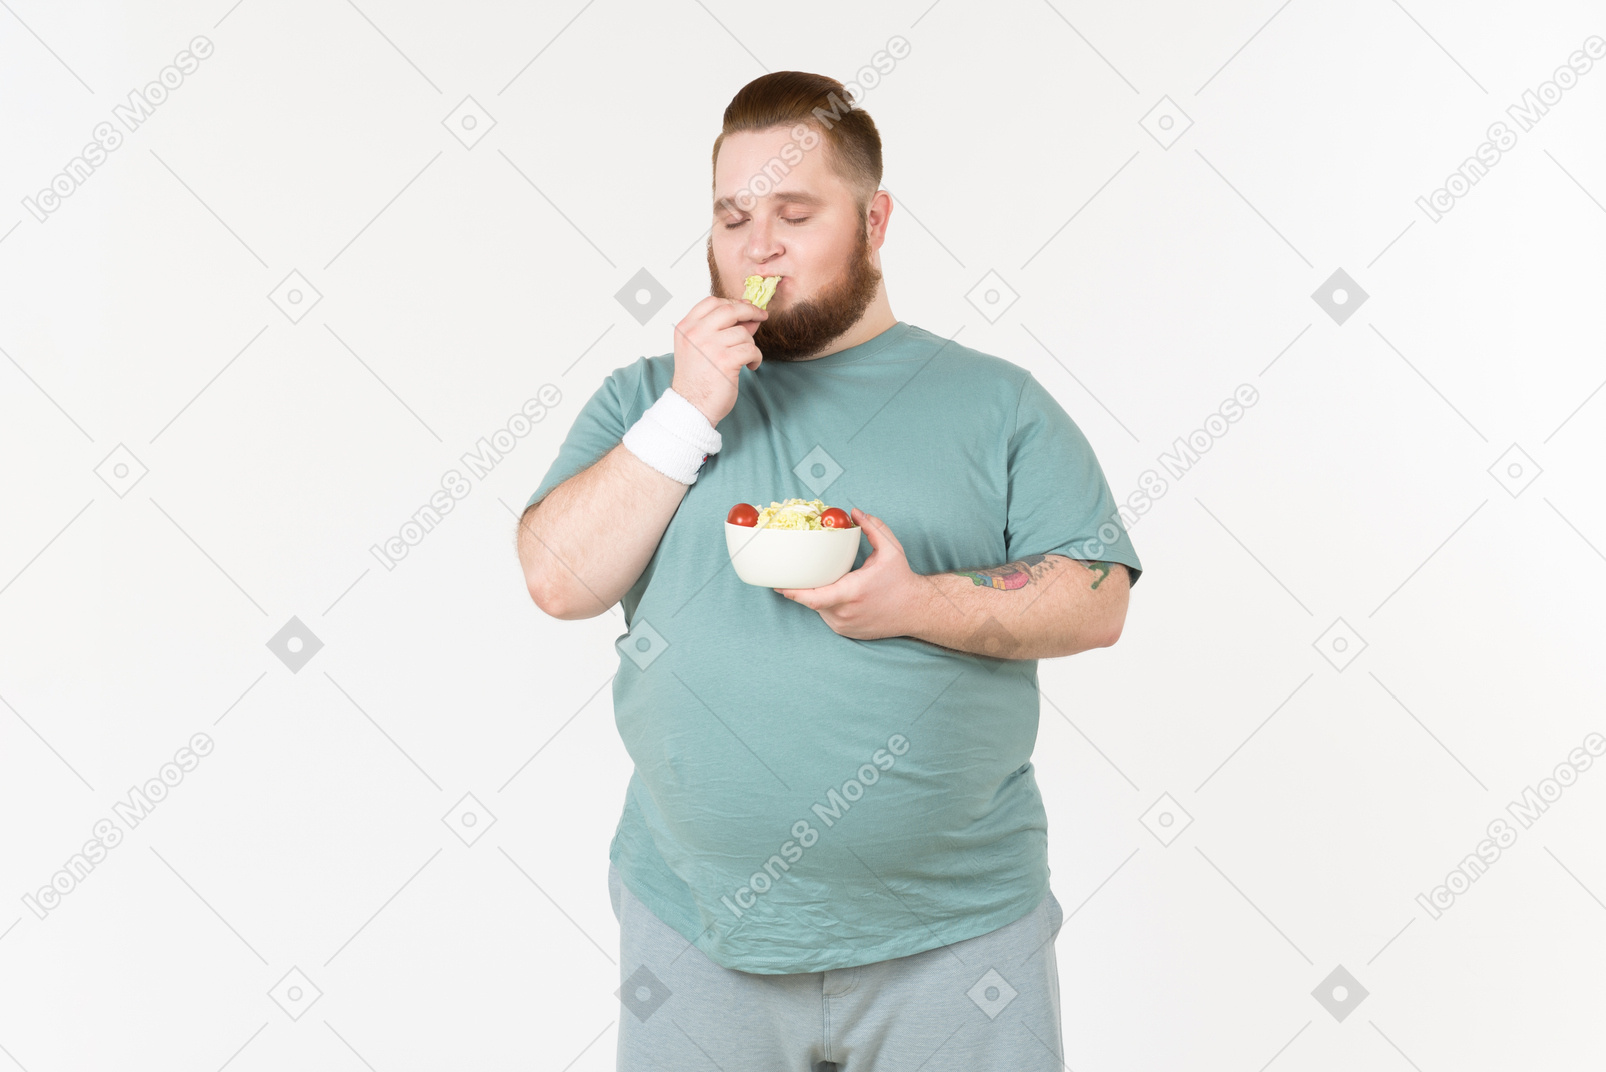 Ragazzo in abiti sportivi che mangia foglie di insalata che ha scelto dal piatto